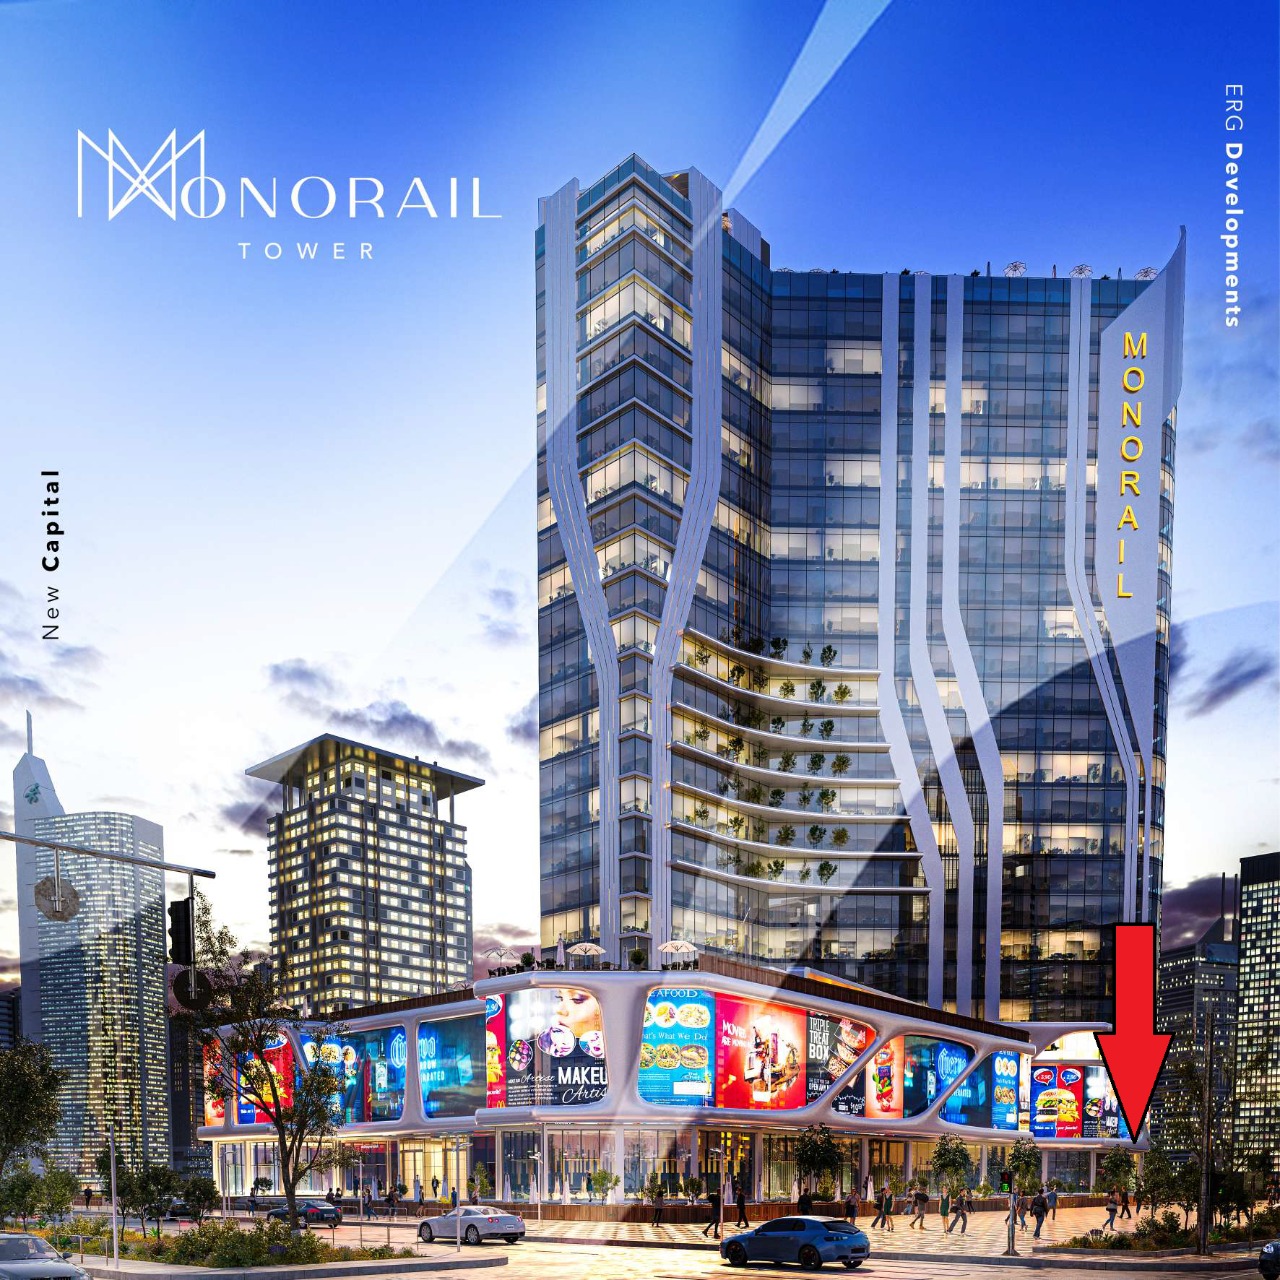 مول مونوريل تاور العاصمة الإدارية الجديدة إعمار رزق جروب – Monorail Tower New Capital Mall